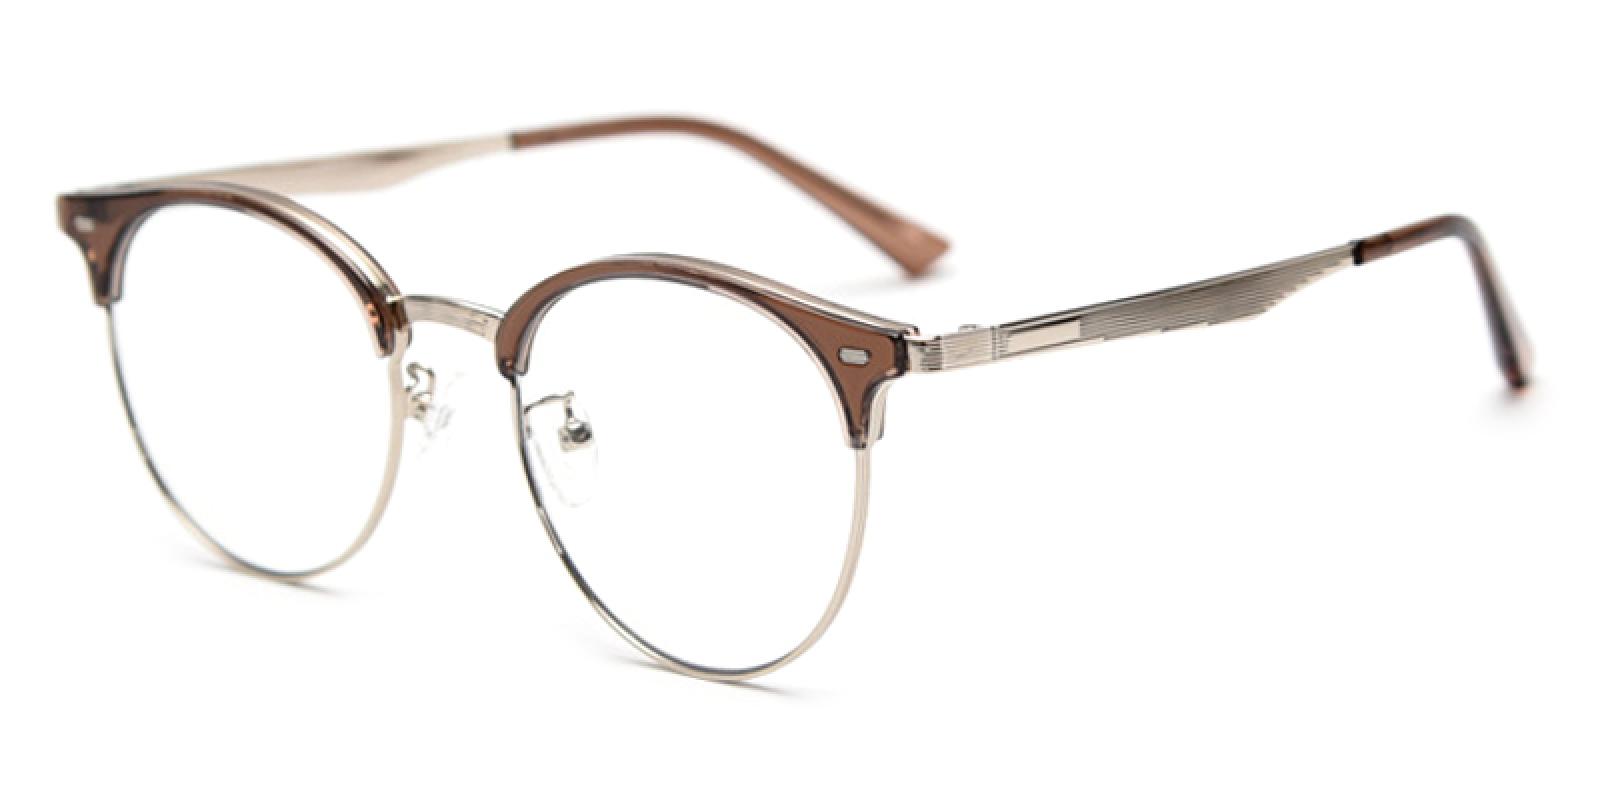 Loma-Brown-Browline-TR-Eyeglasses-detail